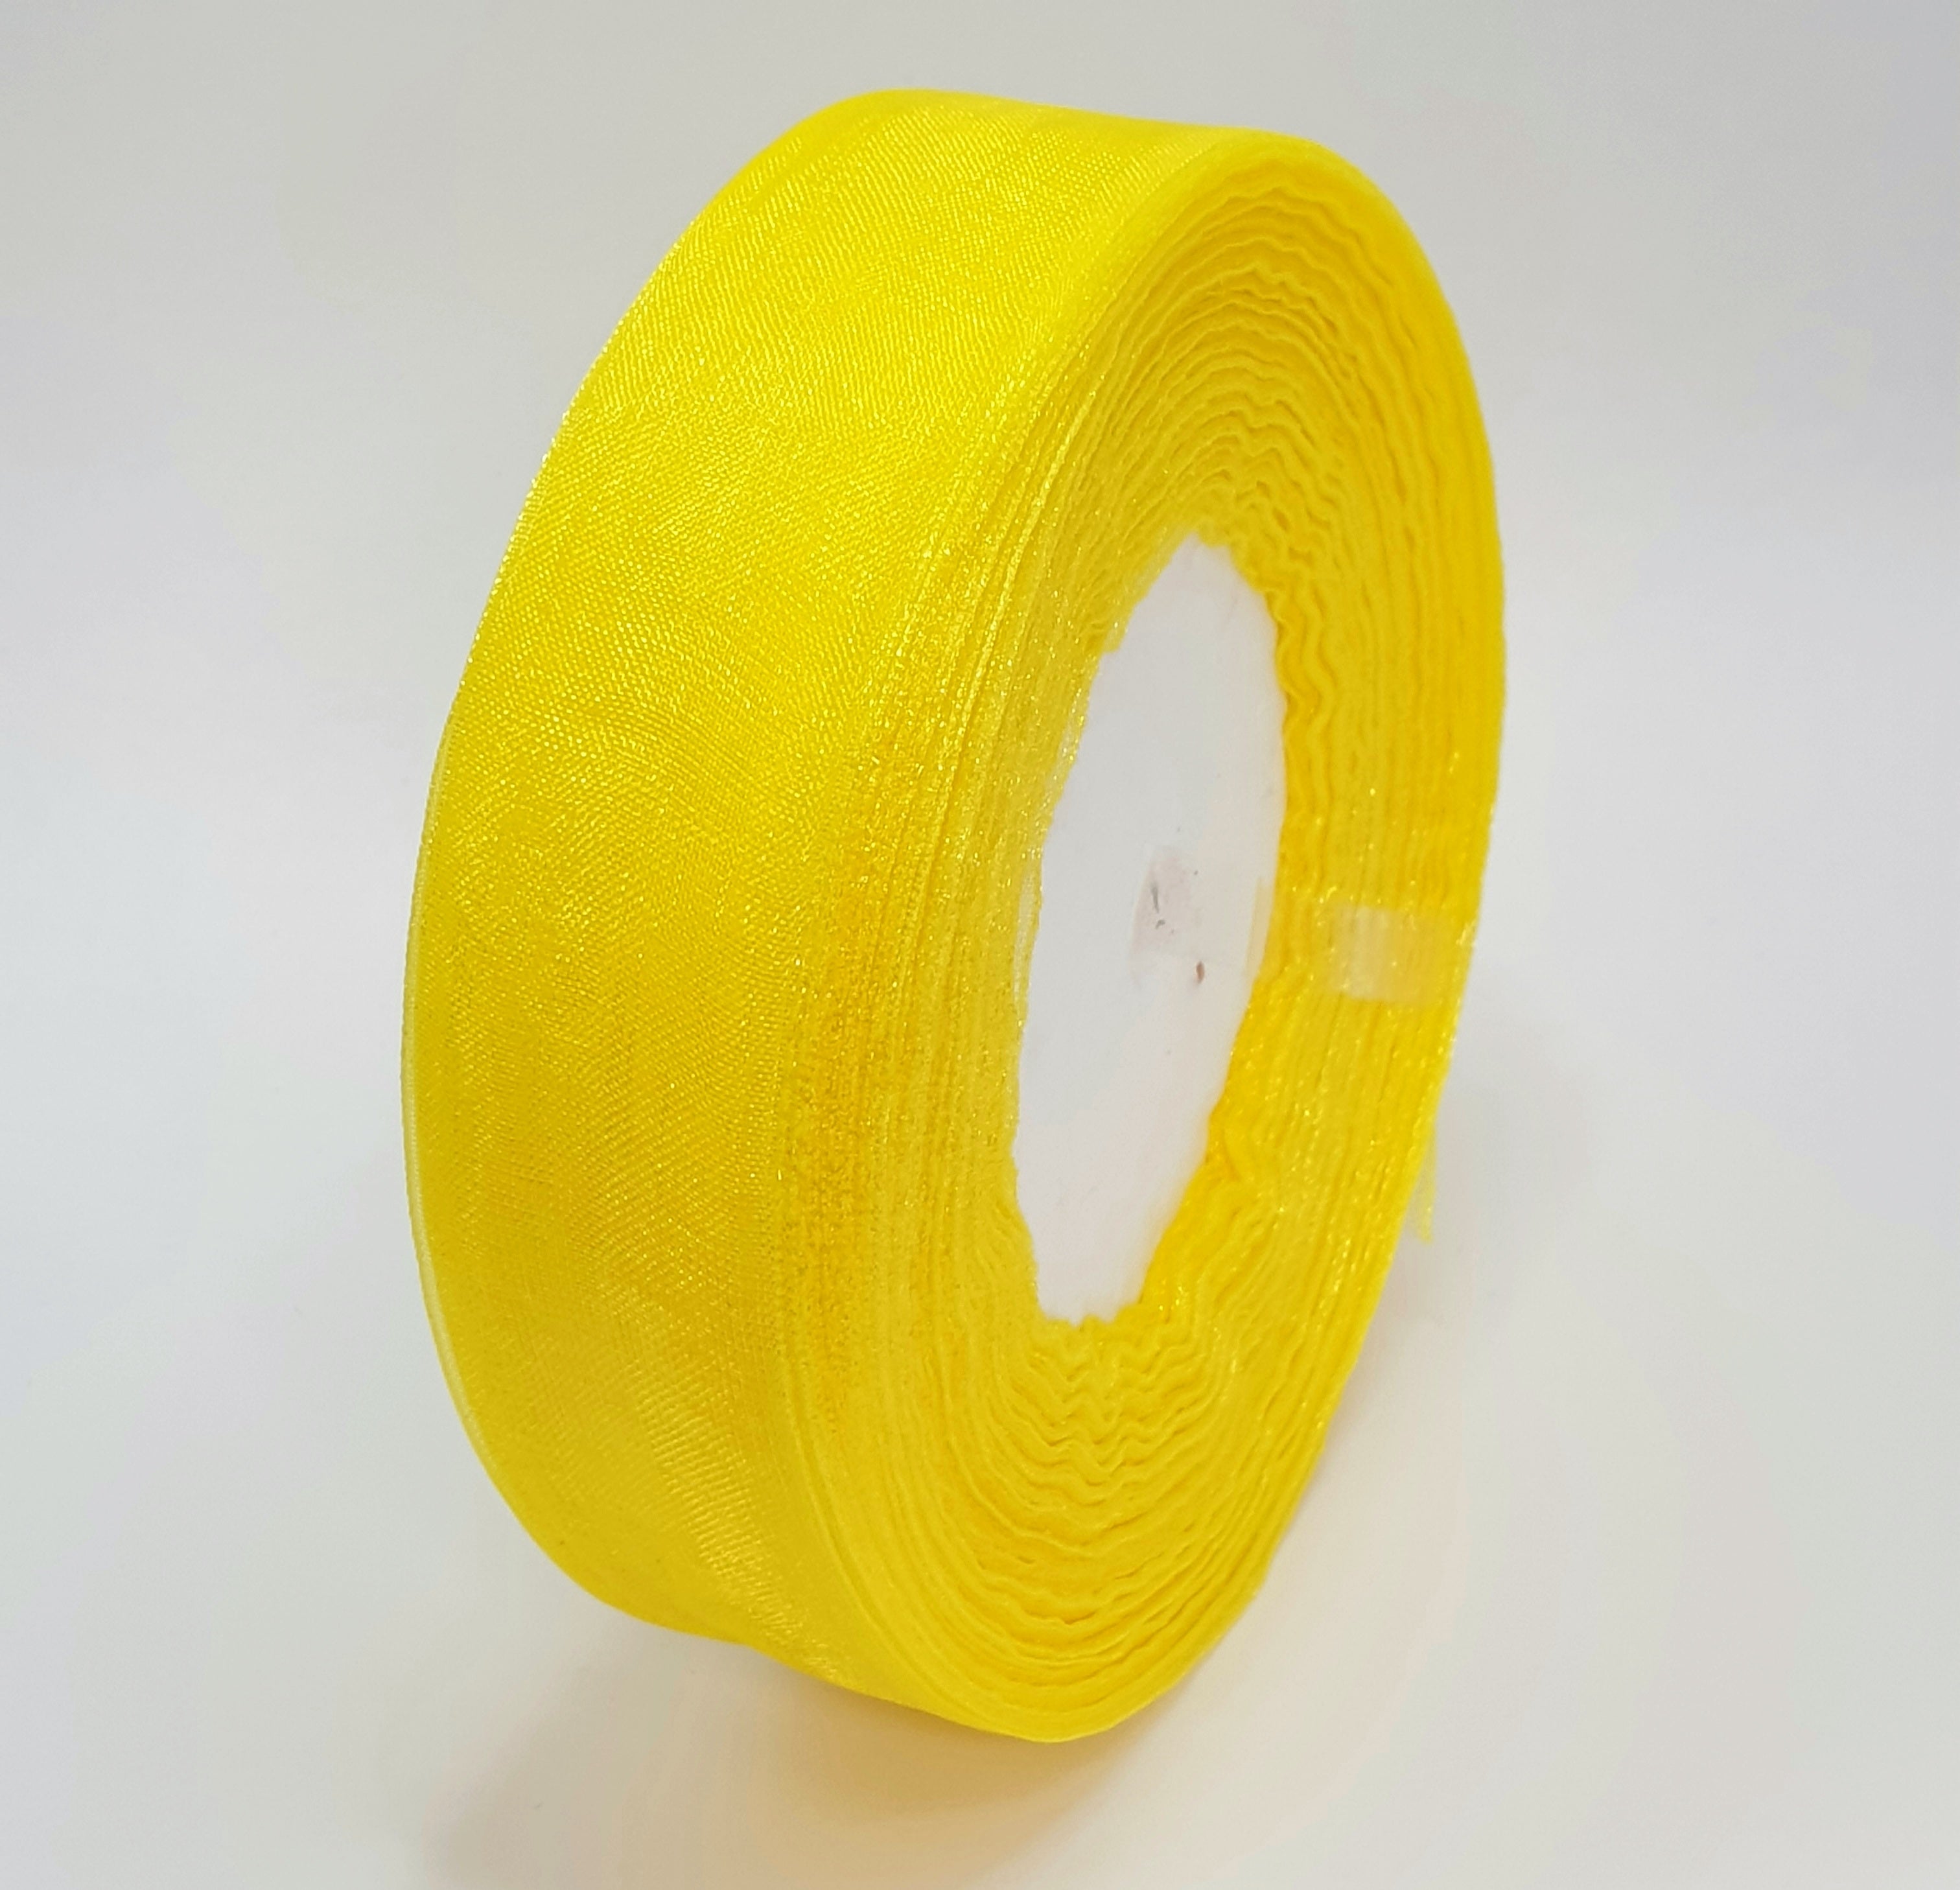 MajorCrafts 25mm 45metres Sheer Organza Fabric Ribbon Roll Yellow Shade R1142